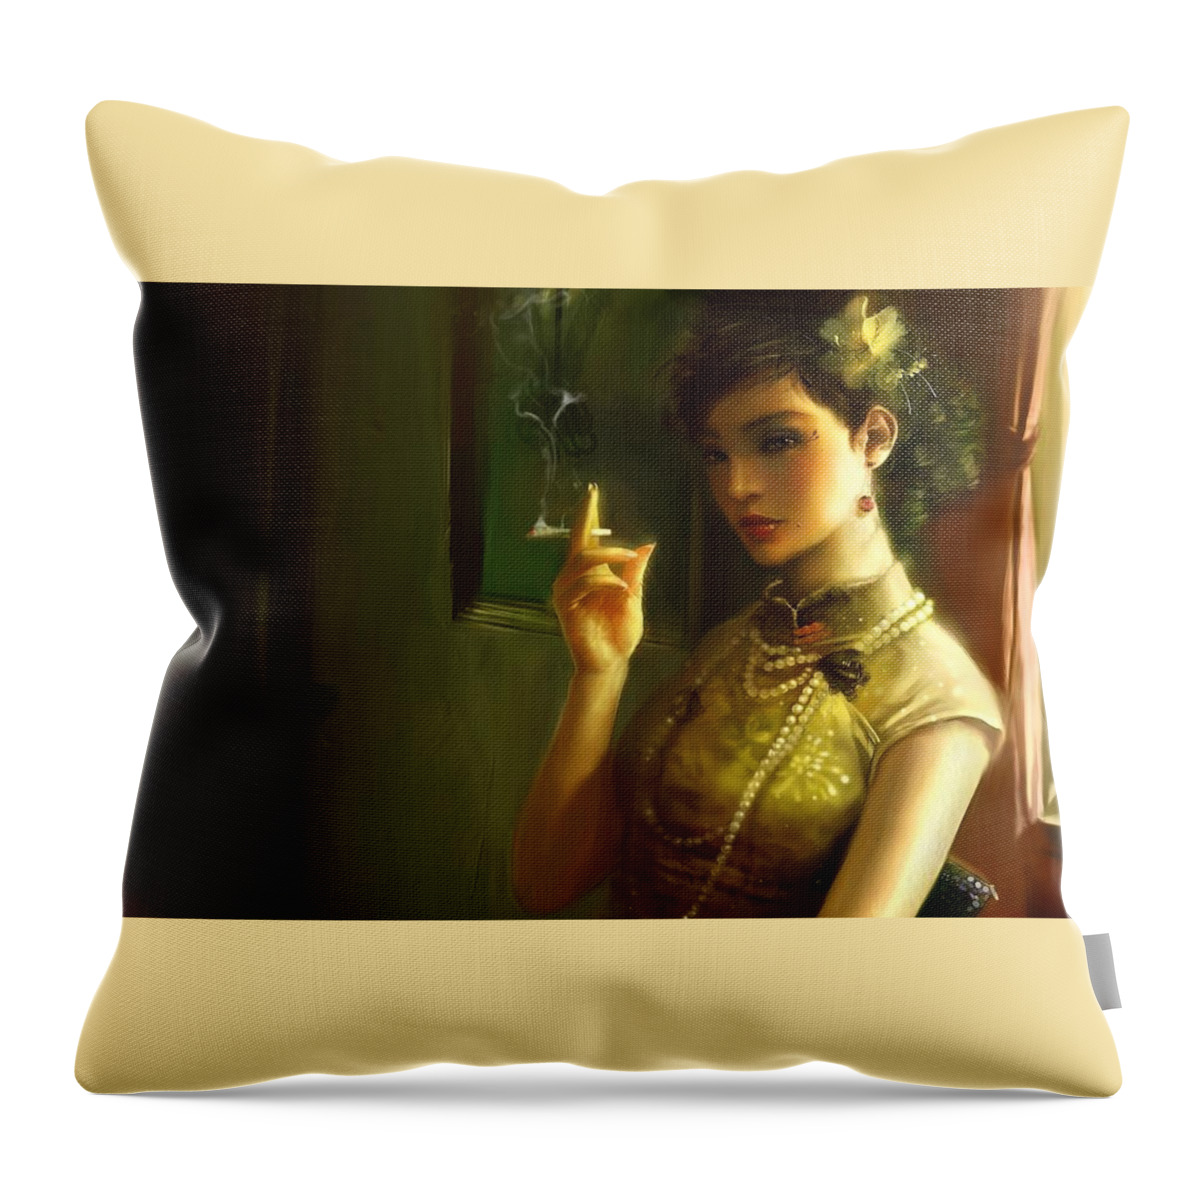 Women Throw Pillow featuring the digital art Women #137 by Super Lovely